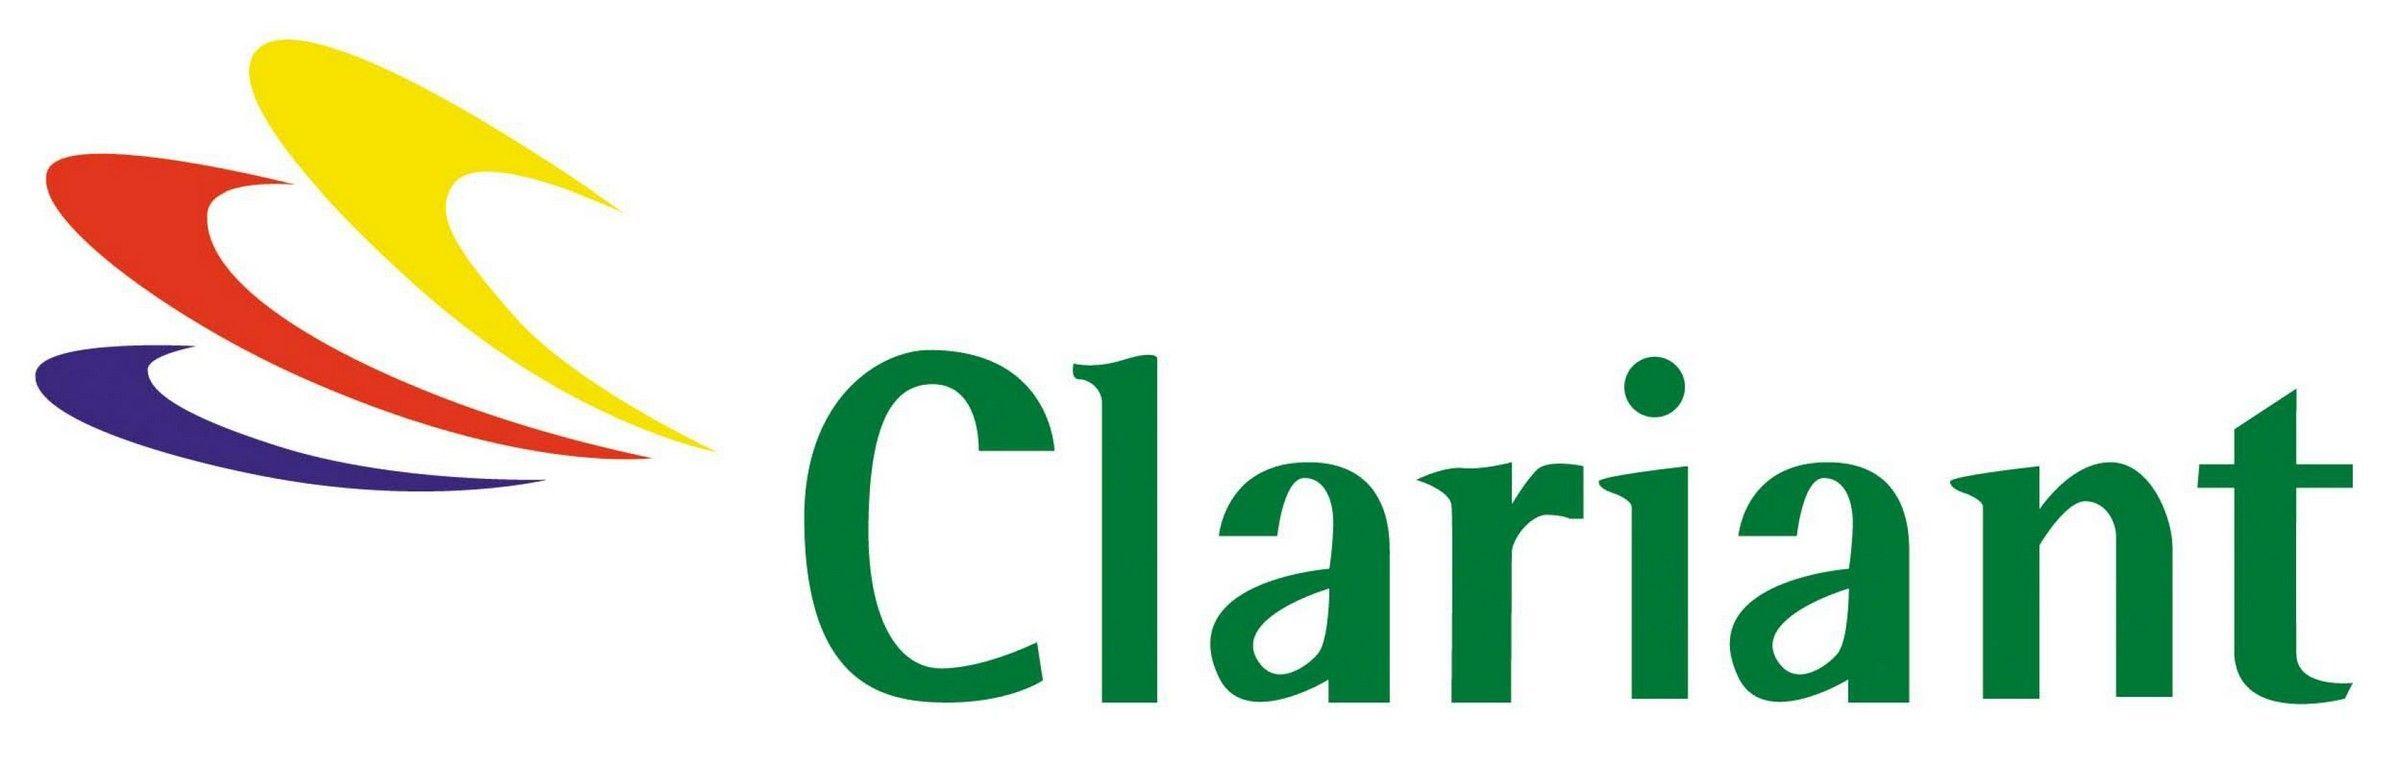 Clariant Logo - Clariant Logo. LogoMania. Logos, Vector Icons, Clip Art